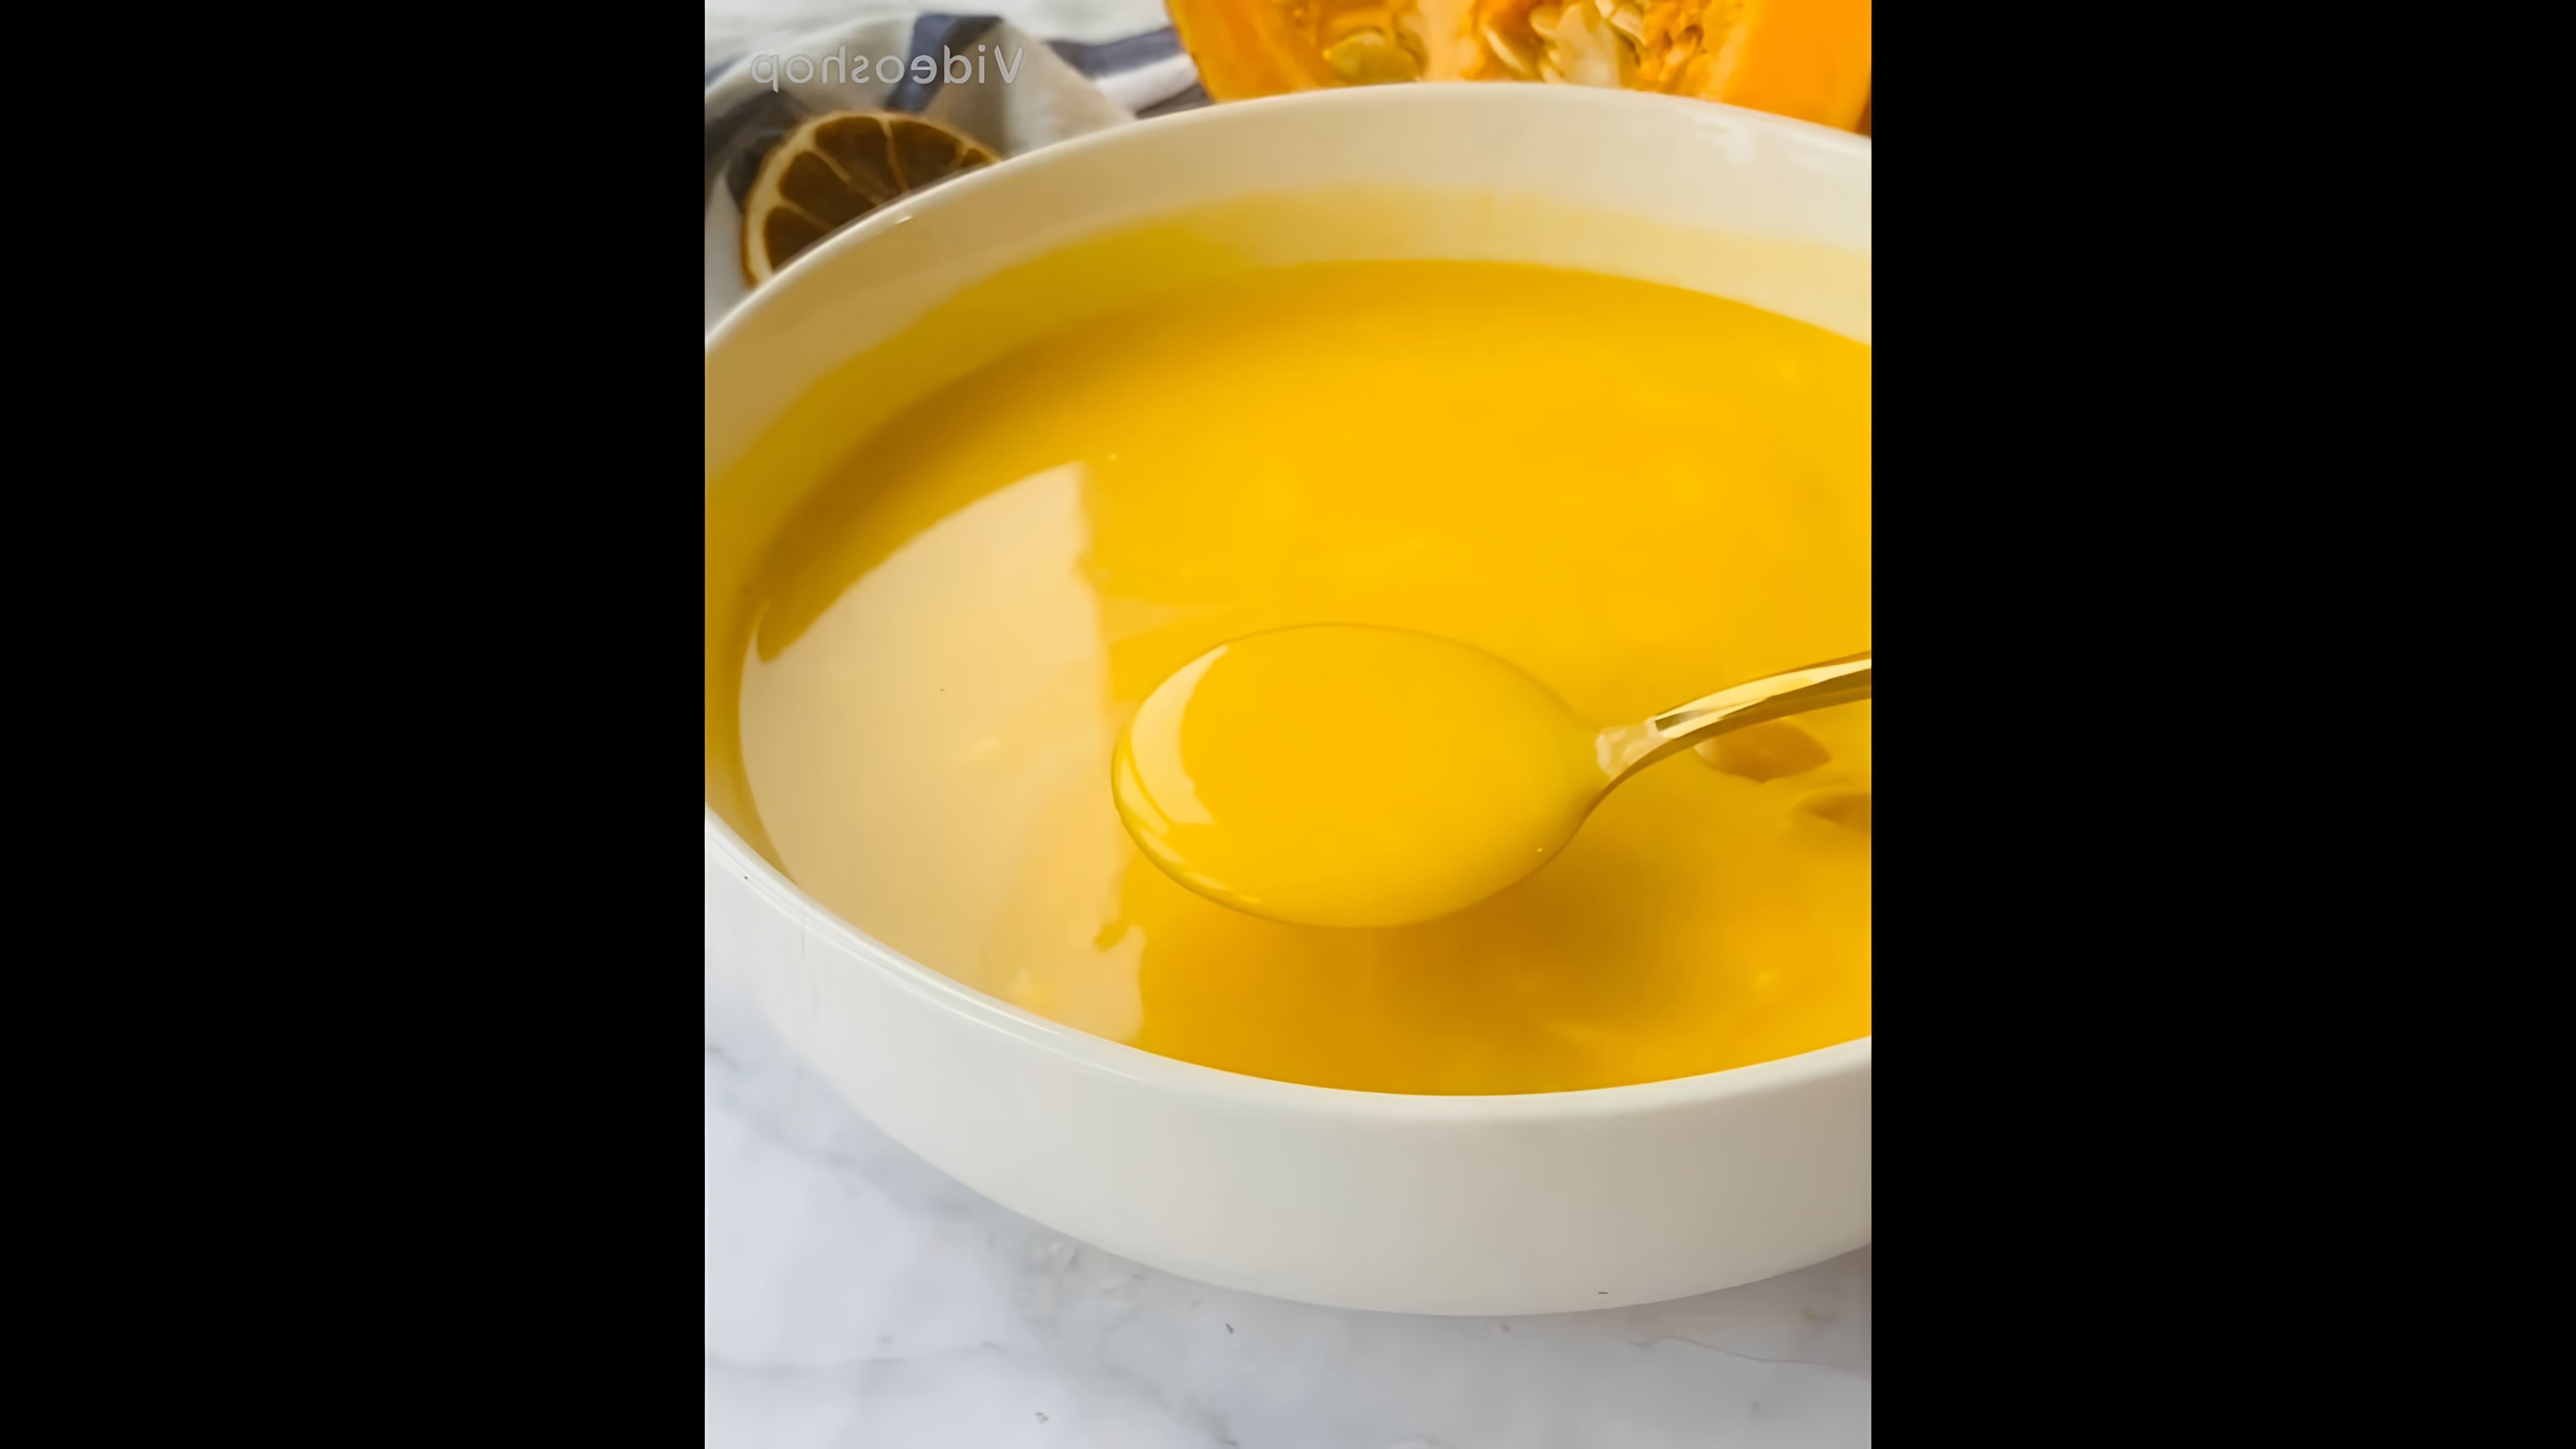 В этом видео демонстрируется процесс приготовления тыквенного супа-пюре по классическому рецепту